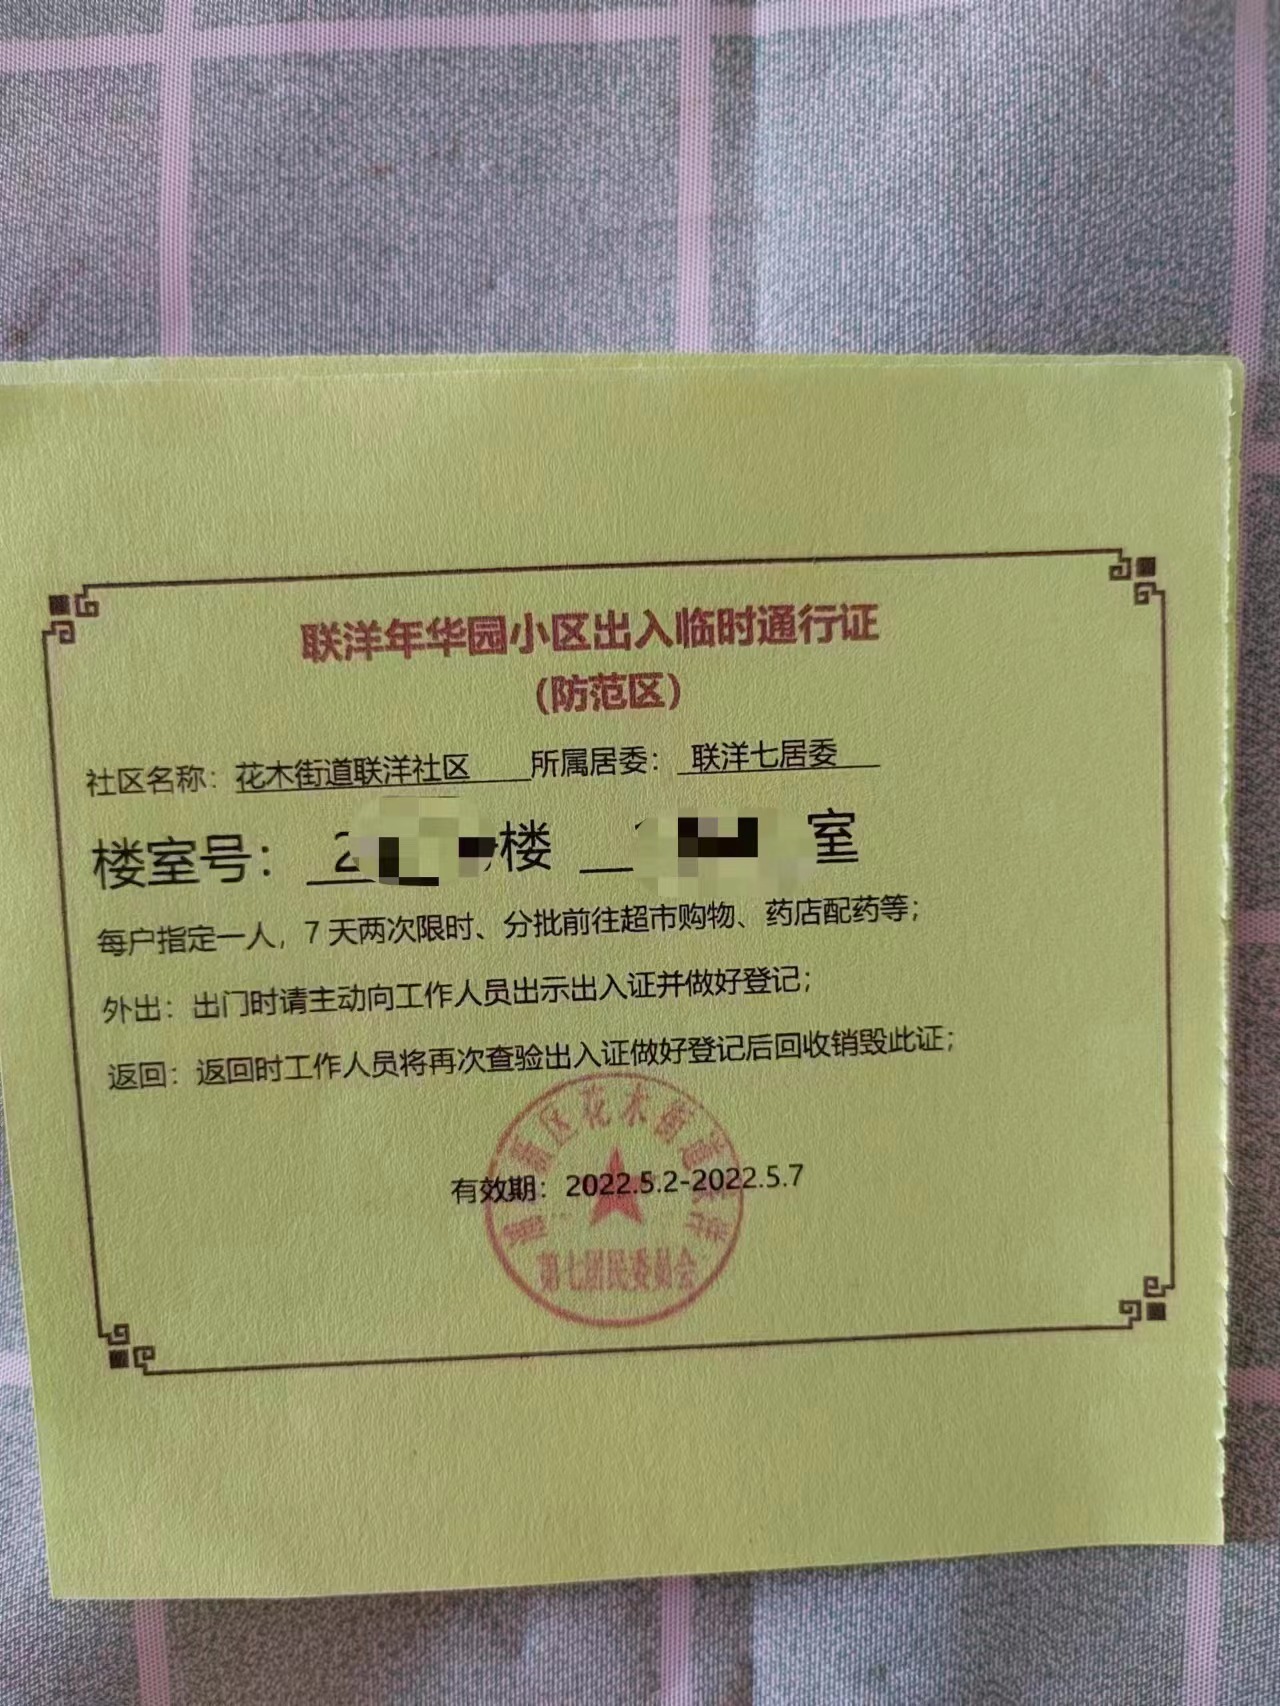 上海浦东，花木街道联洋社区五月初发放的临时通行证，有效期是2022年5月2日-2022年5月7日。图片来源：网络